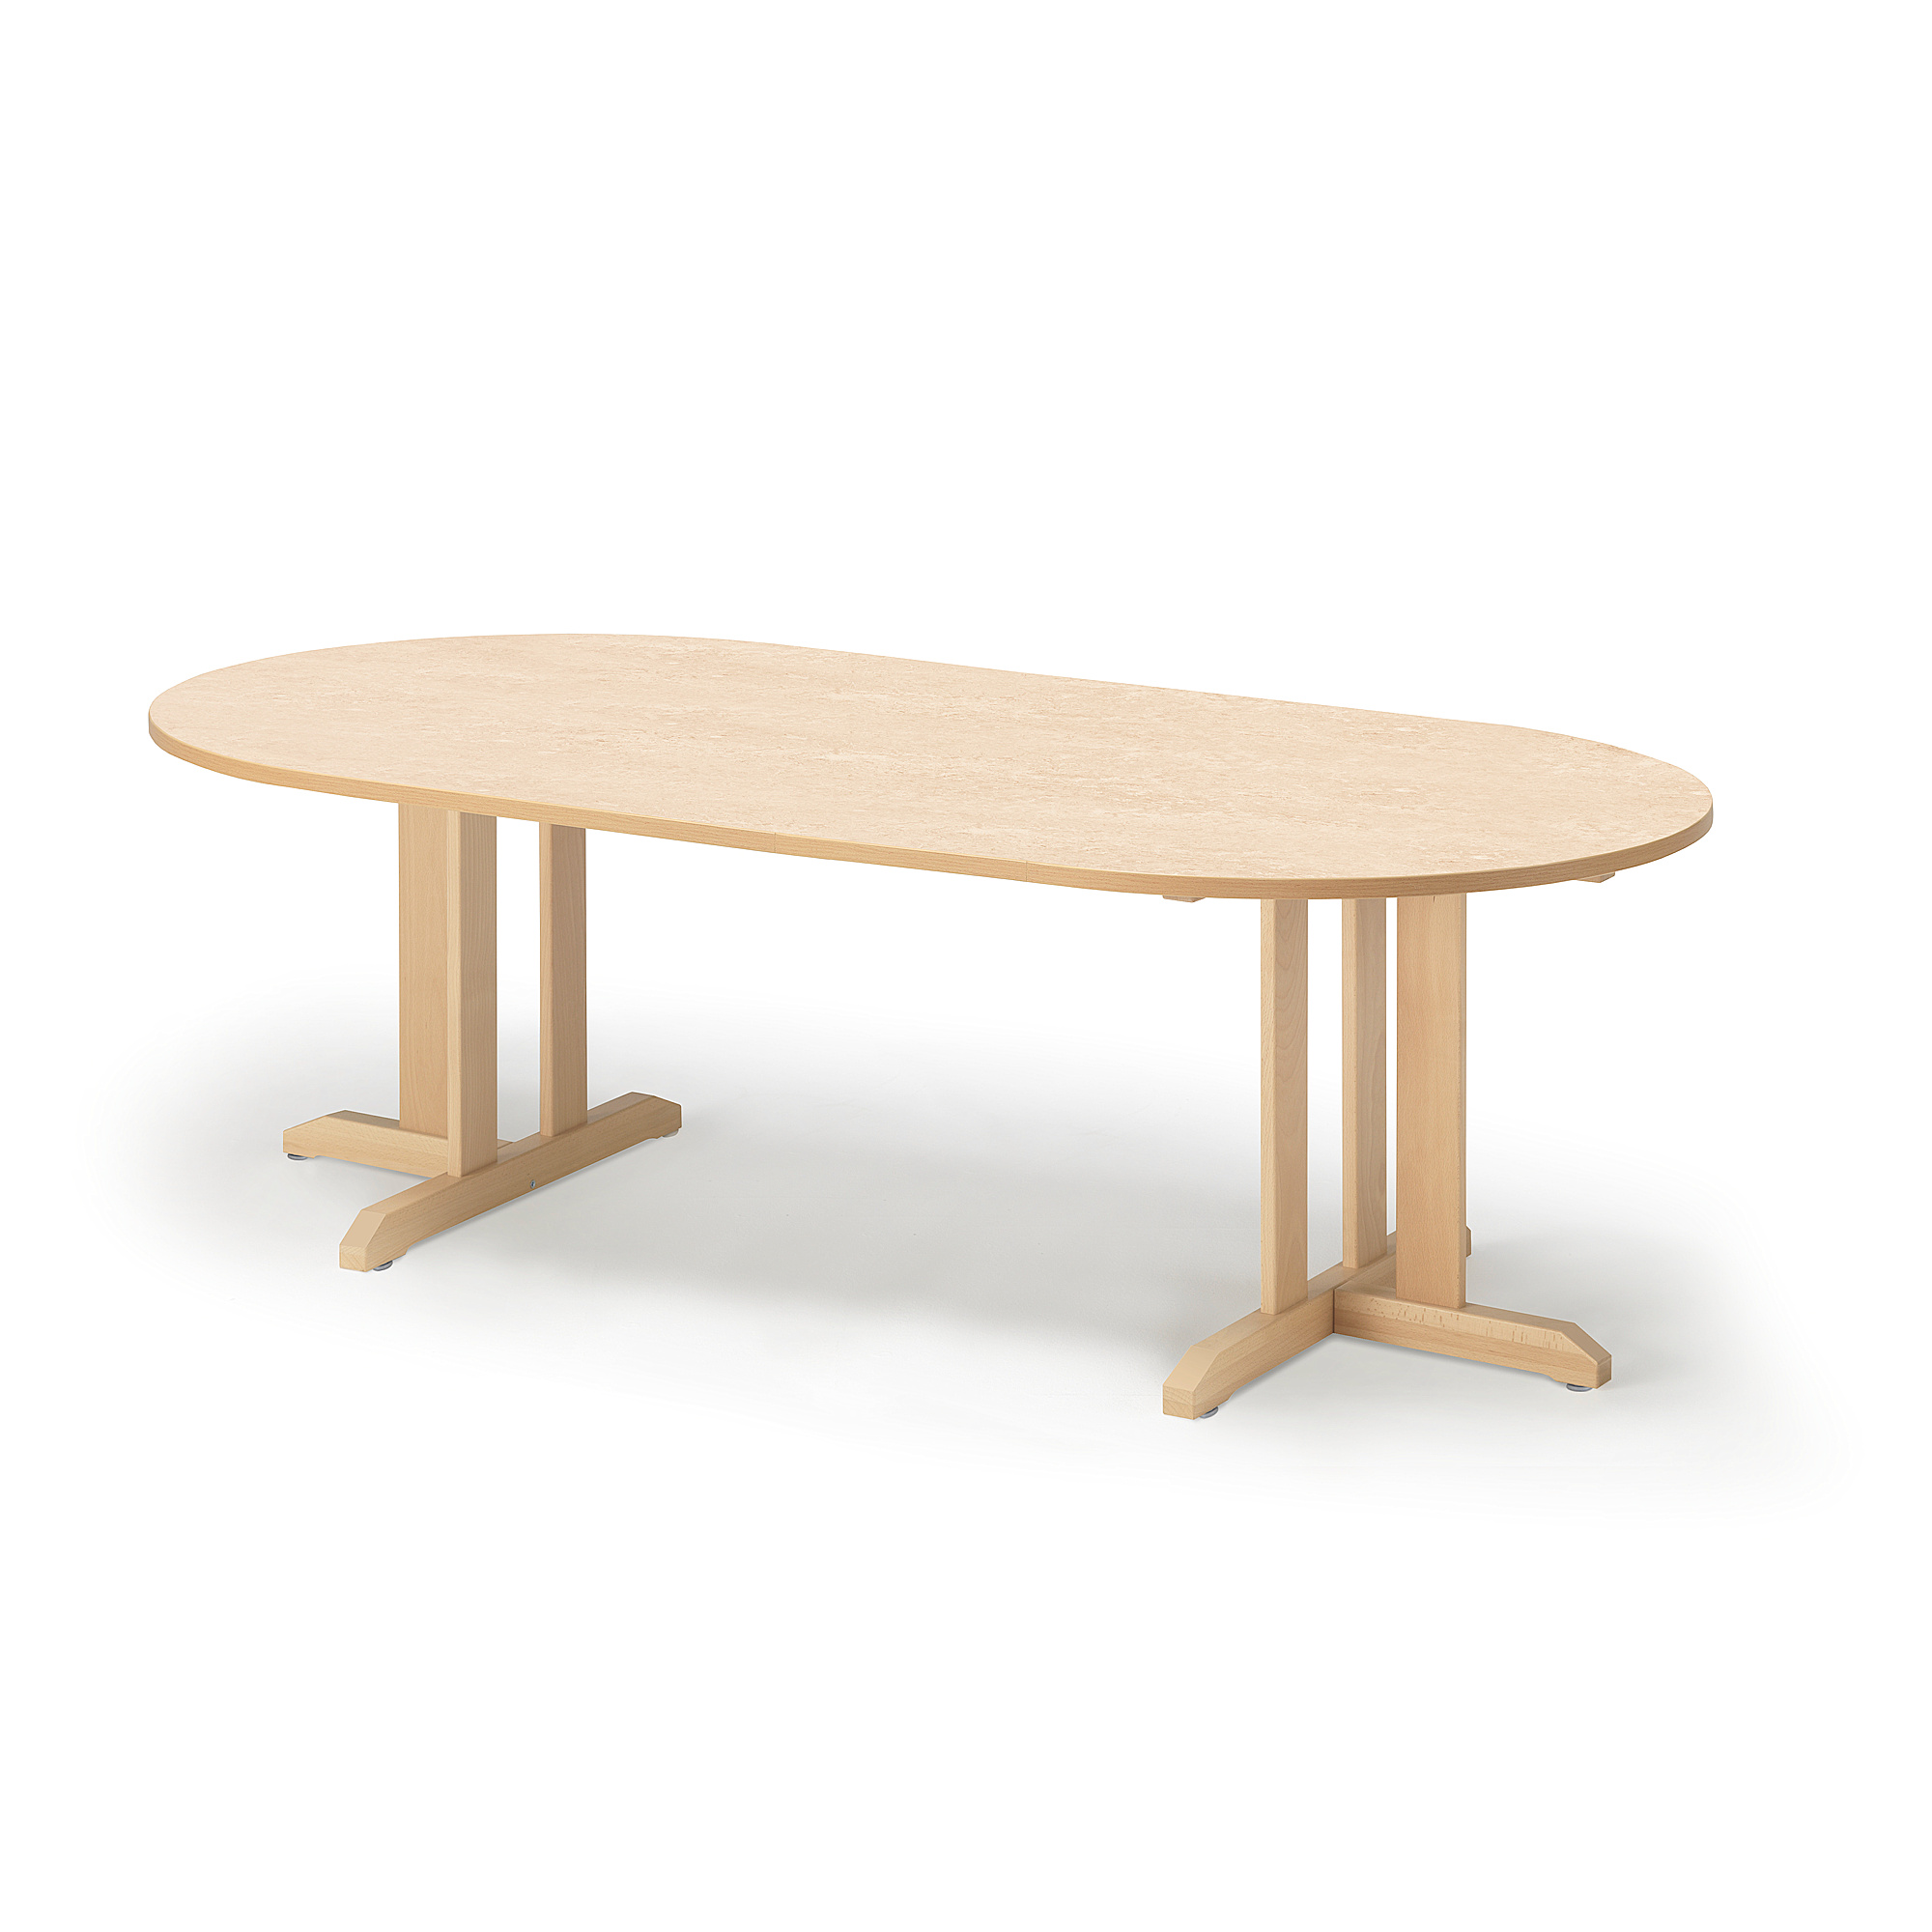 Stůl KUPOL, 2000x1000x600 mm, oválný, akustické linoleum, bříza/béžová